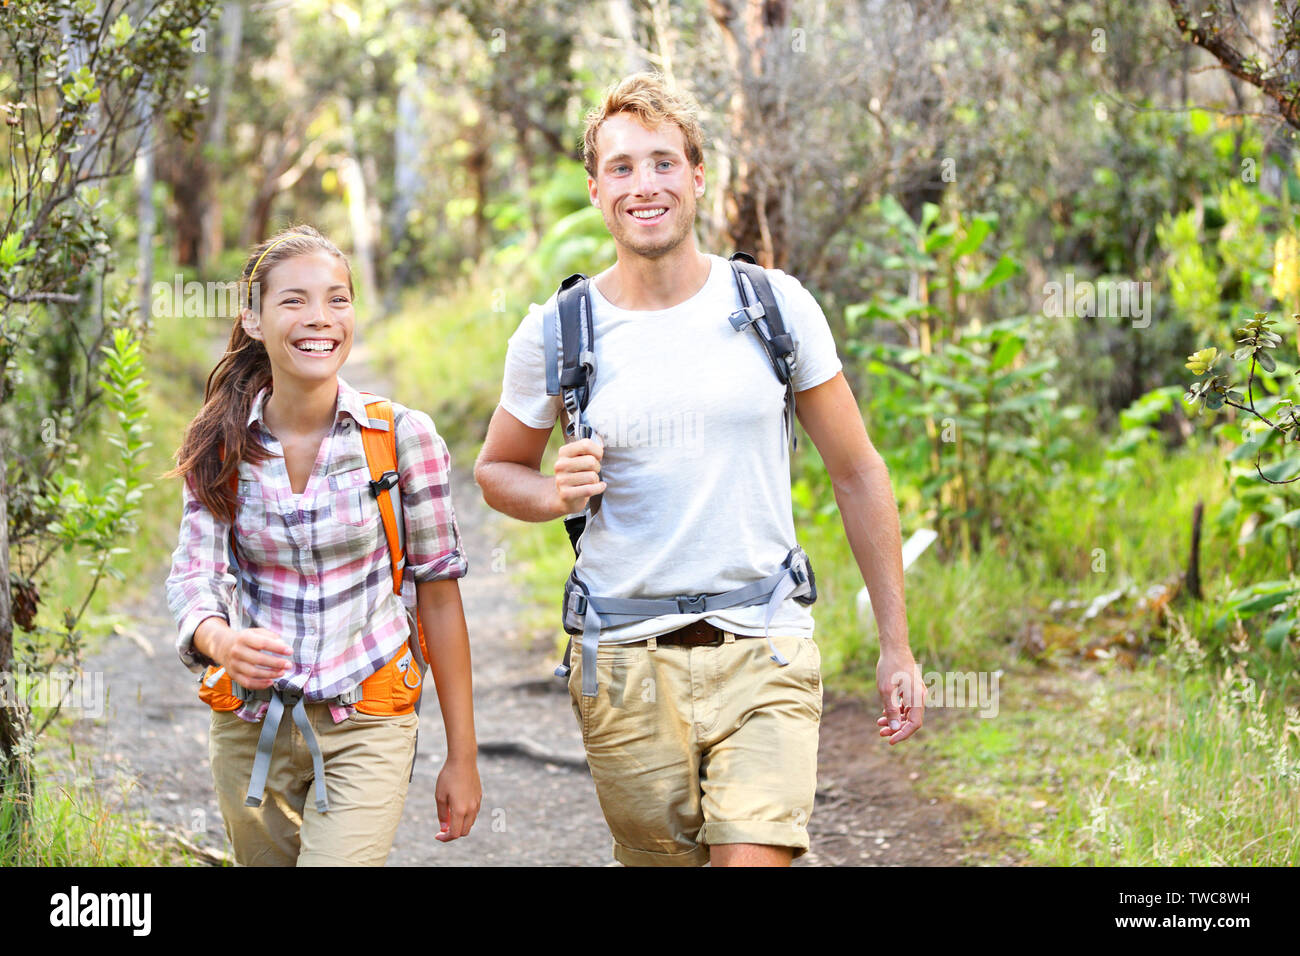 Quelques activités de plein air - Randonnée Les randonneurs heureux marchant dans la forêt. Couple randonneur rire et sourire. Groupe multiracial, man et woman sur Big Island, Hawaii, USA. Banque D'Images